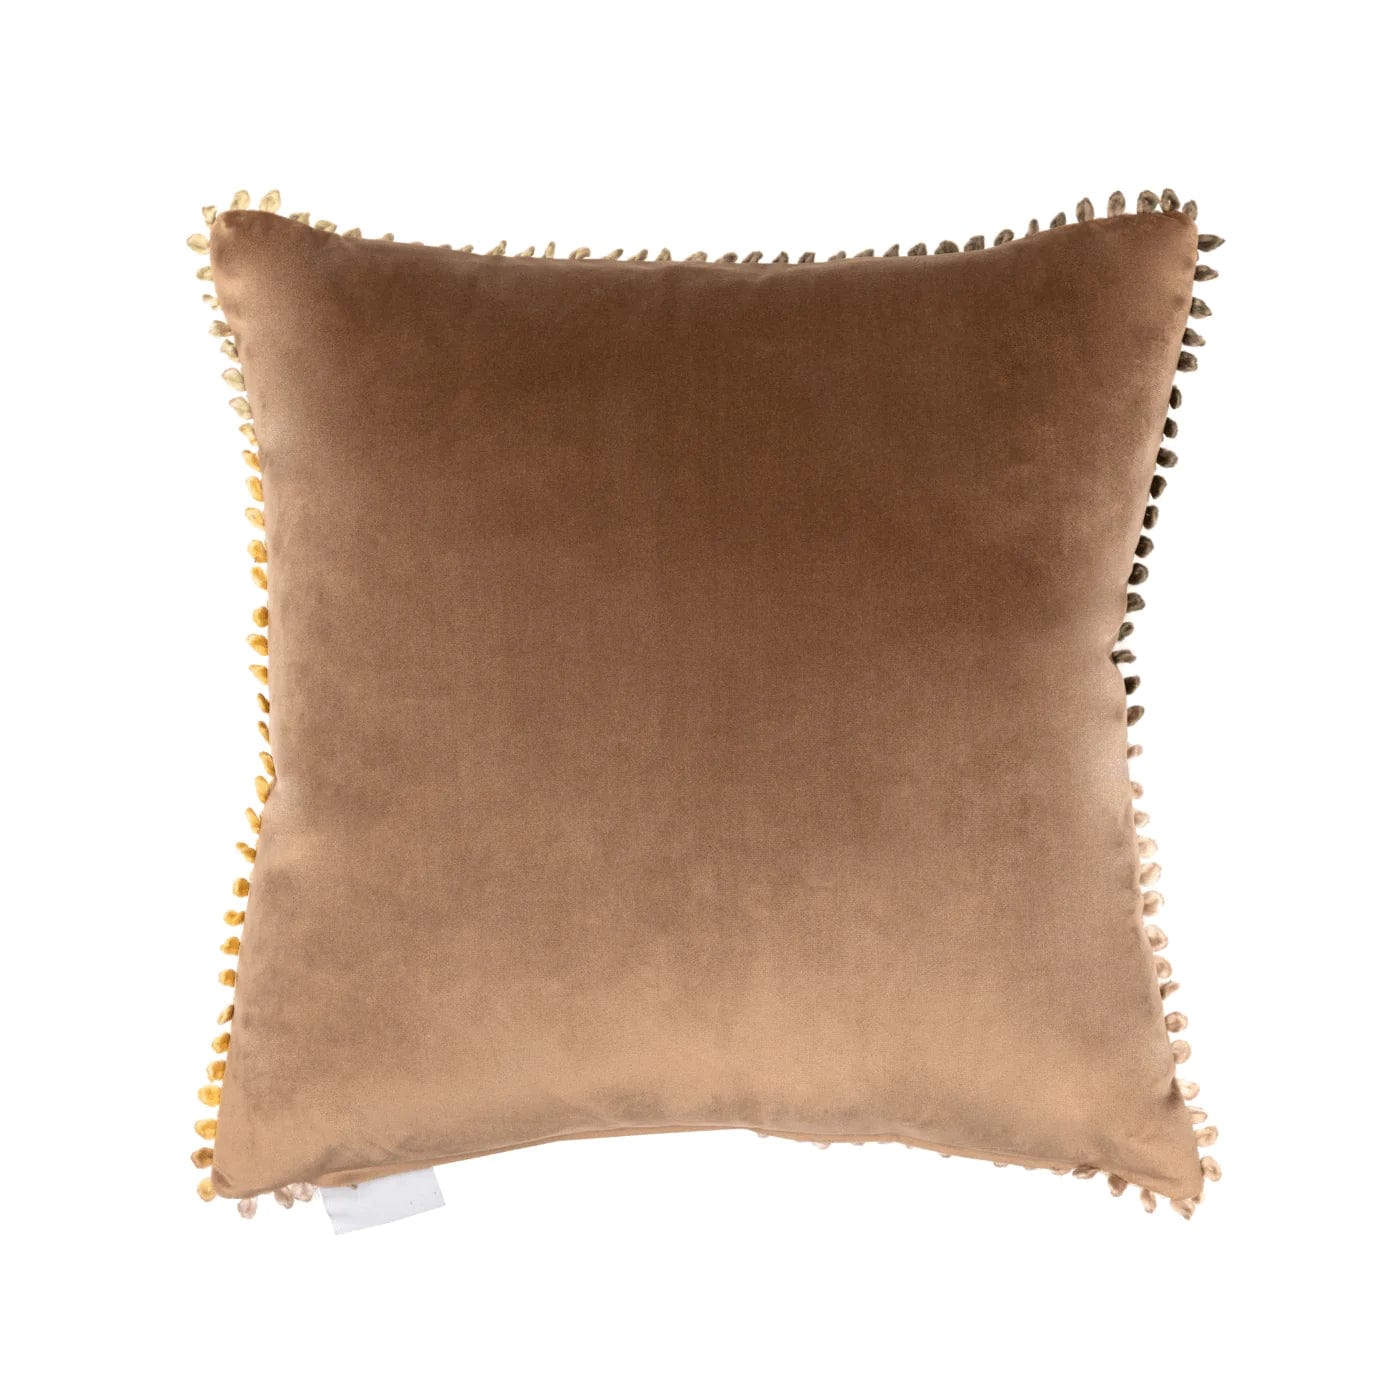 Voyage Maison Cushions Darren Woodhead Braeside Clay Cushion - 43x43cm